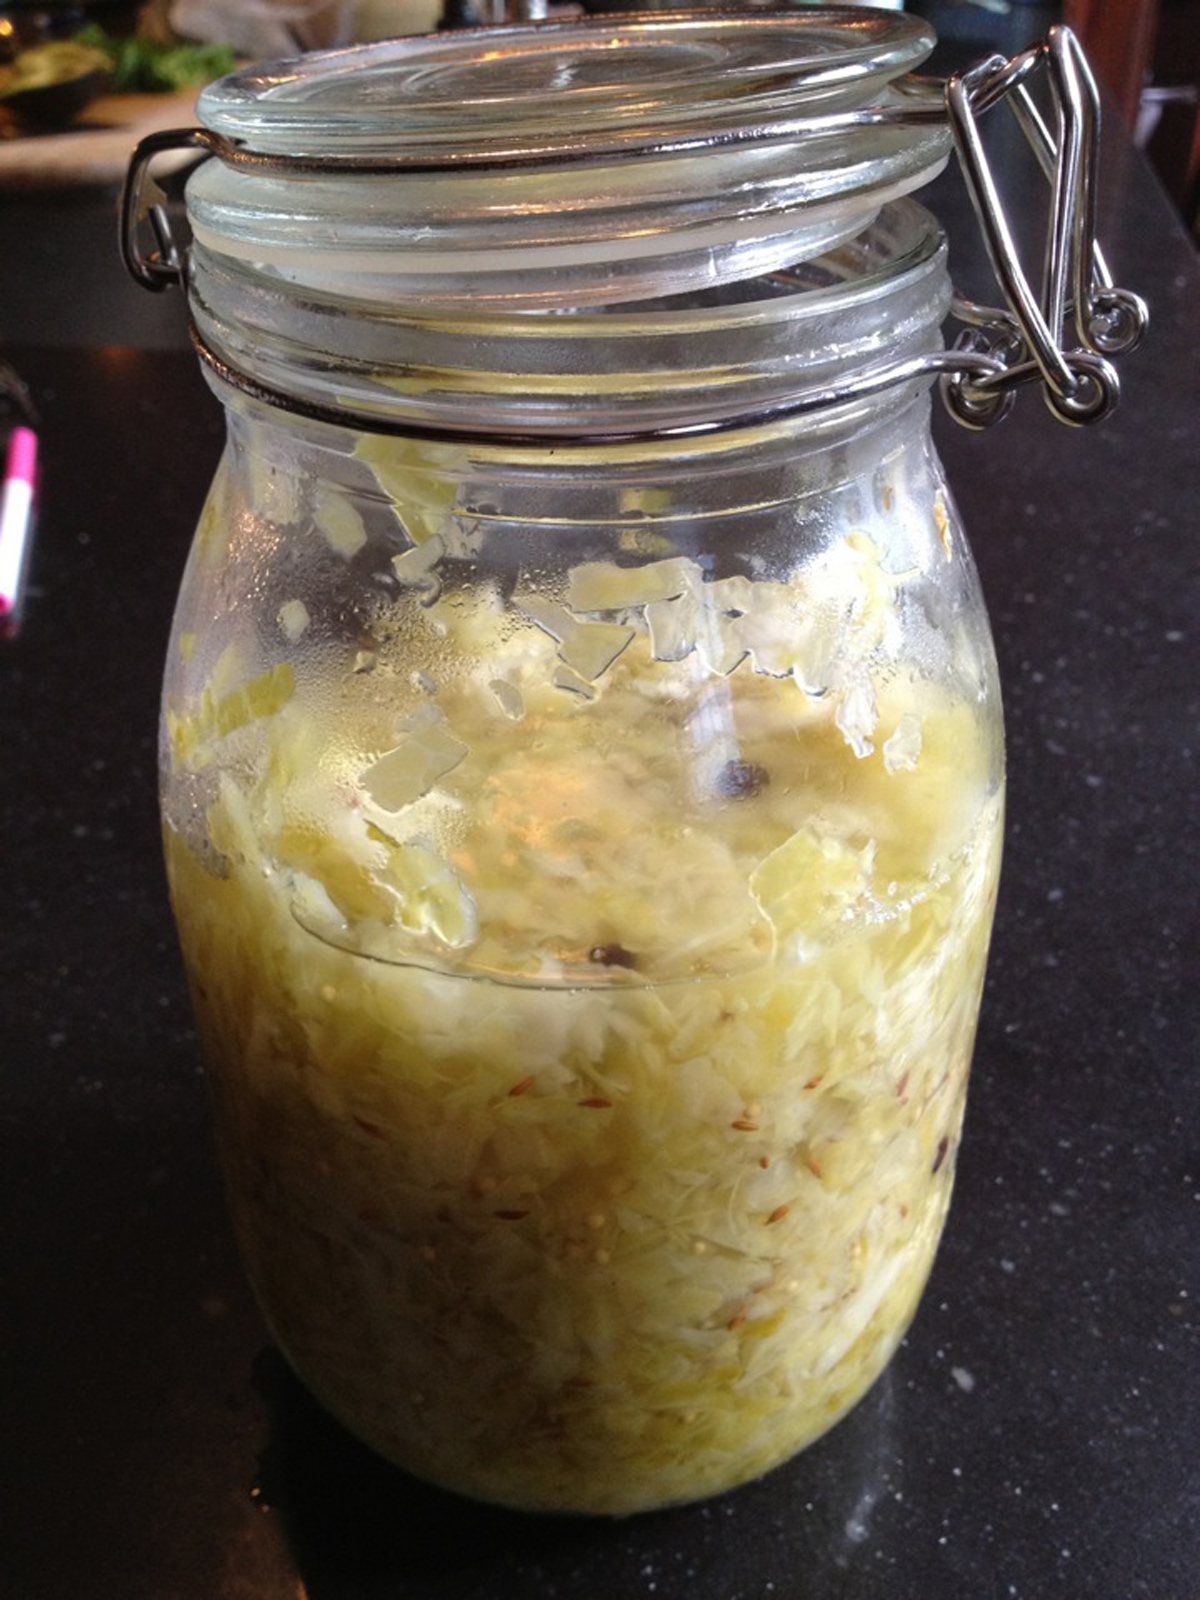 Finished homemade sauerkraut